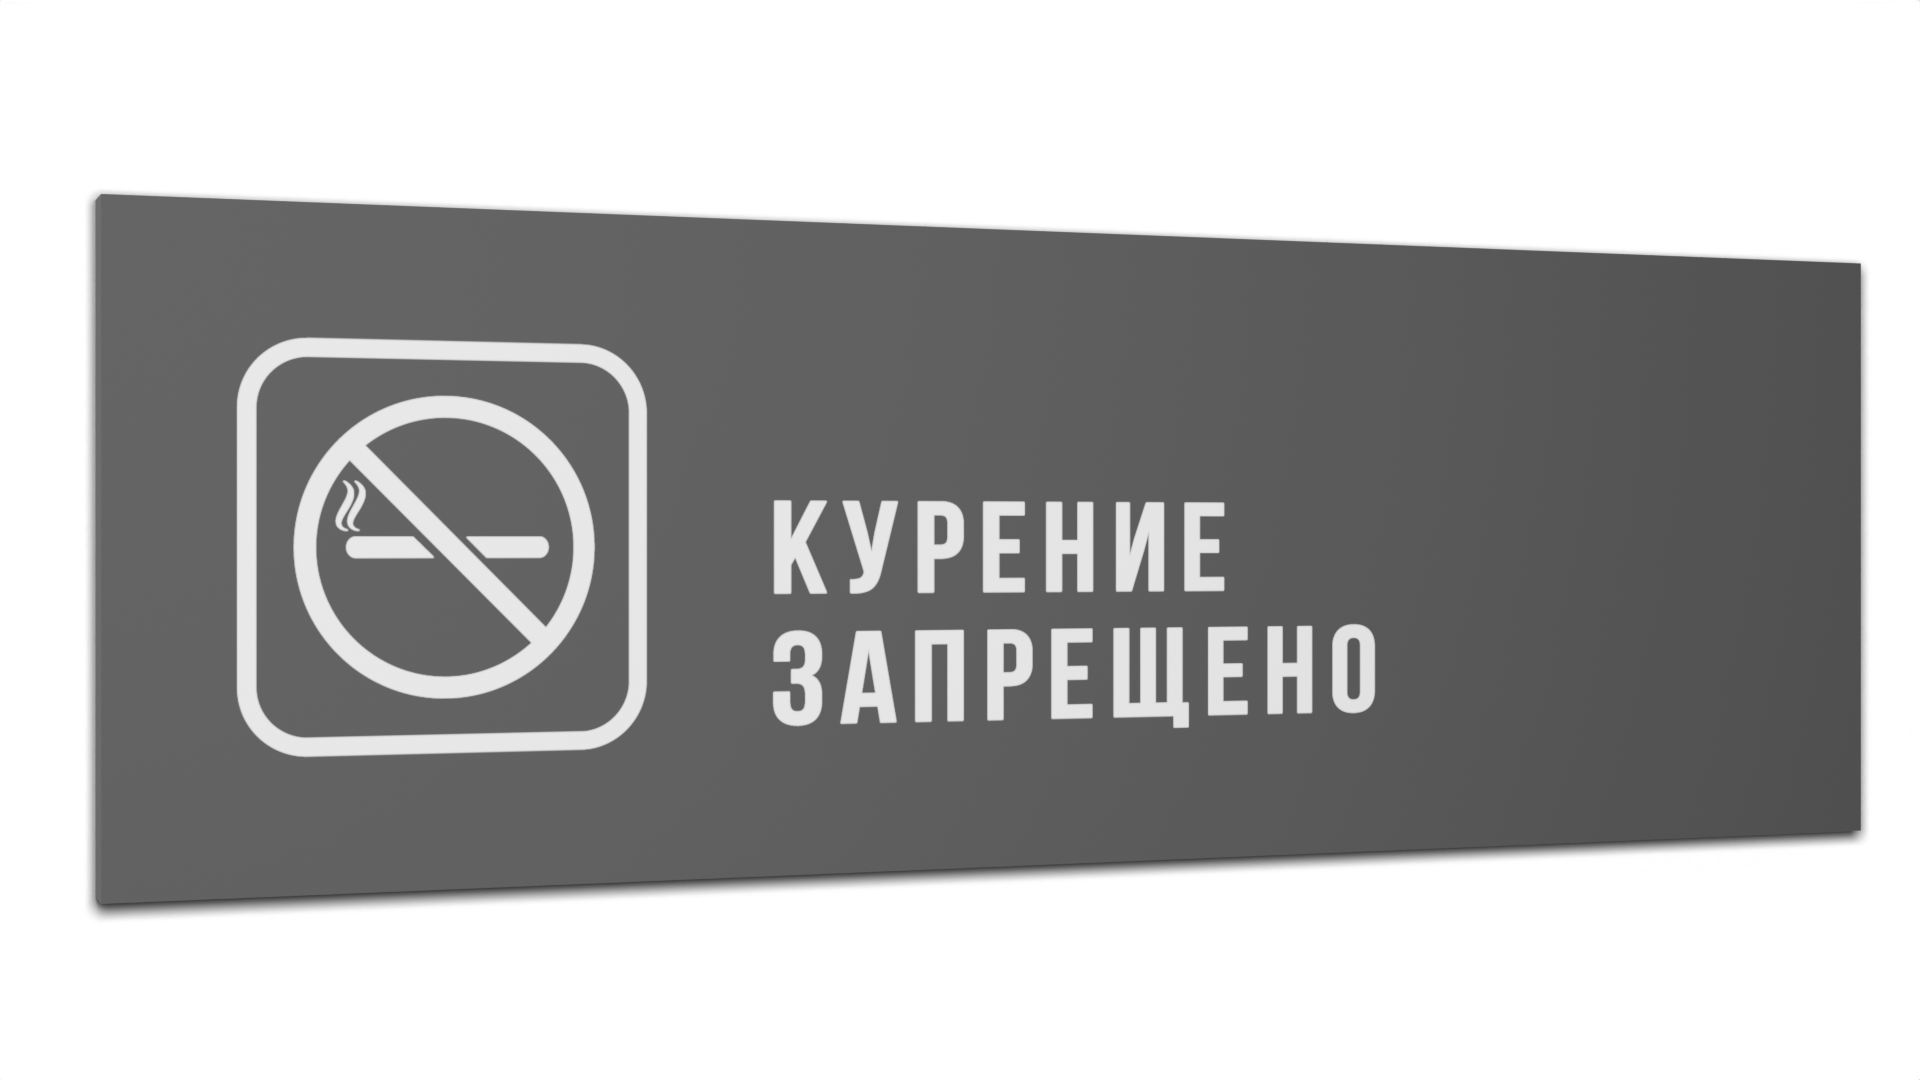 Табличка Курение запрещено, Серая матовая, 30 см х 10 см